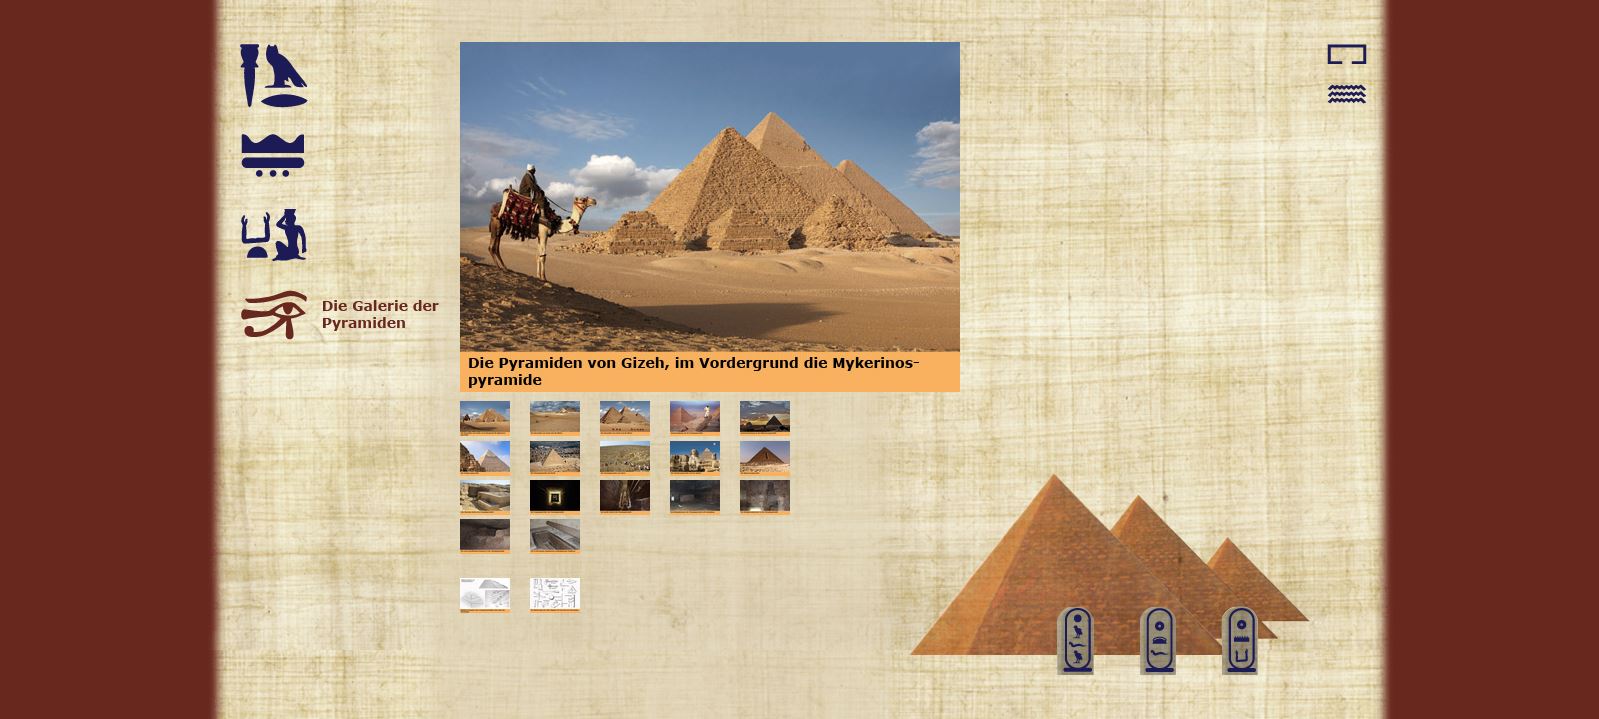 Die Pyramiden von Gizeh - Die Galerie der Pyramiden